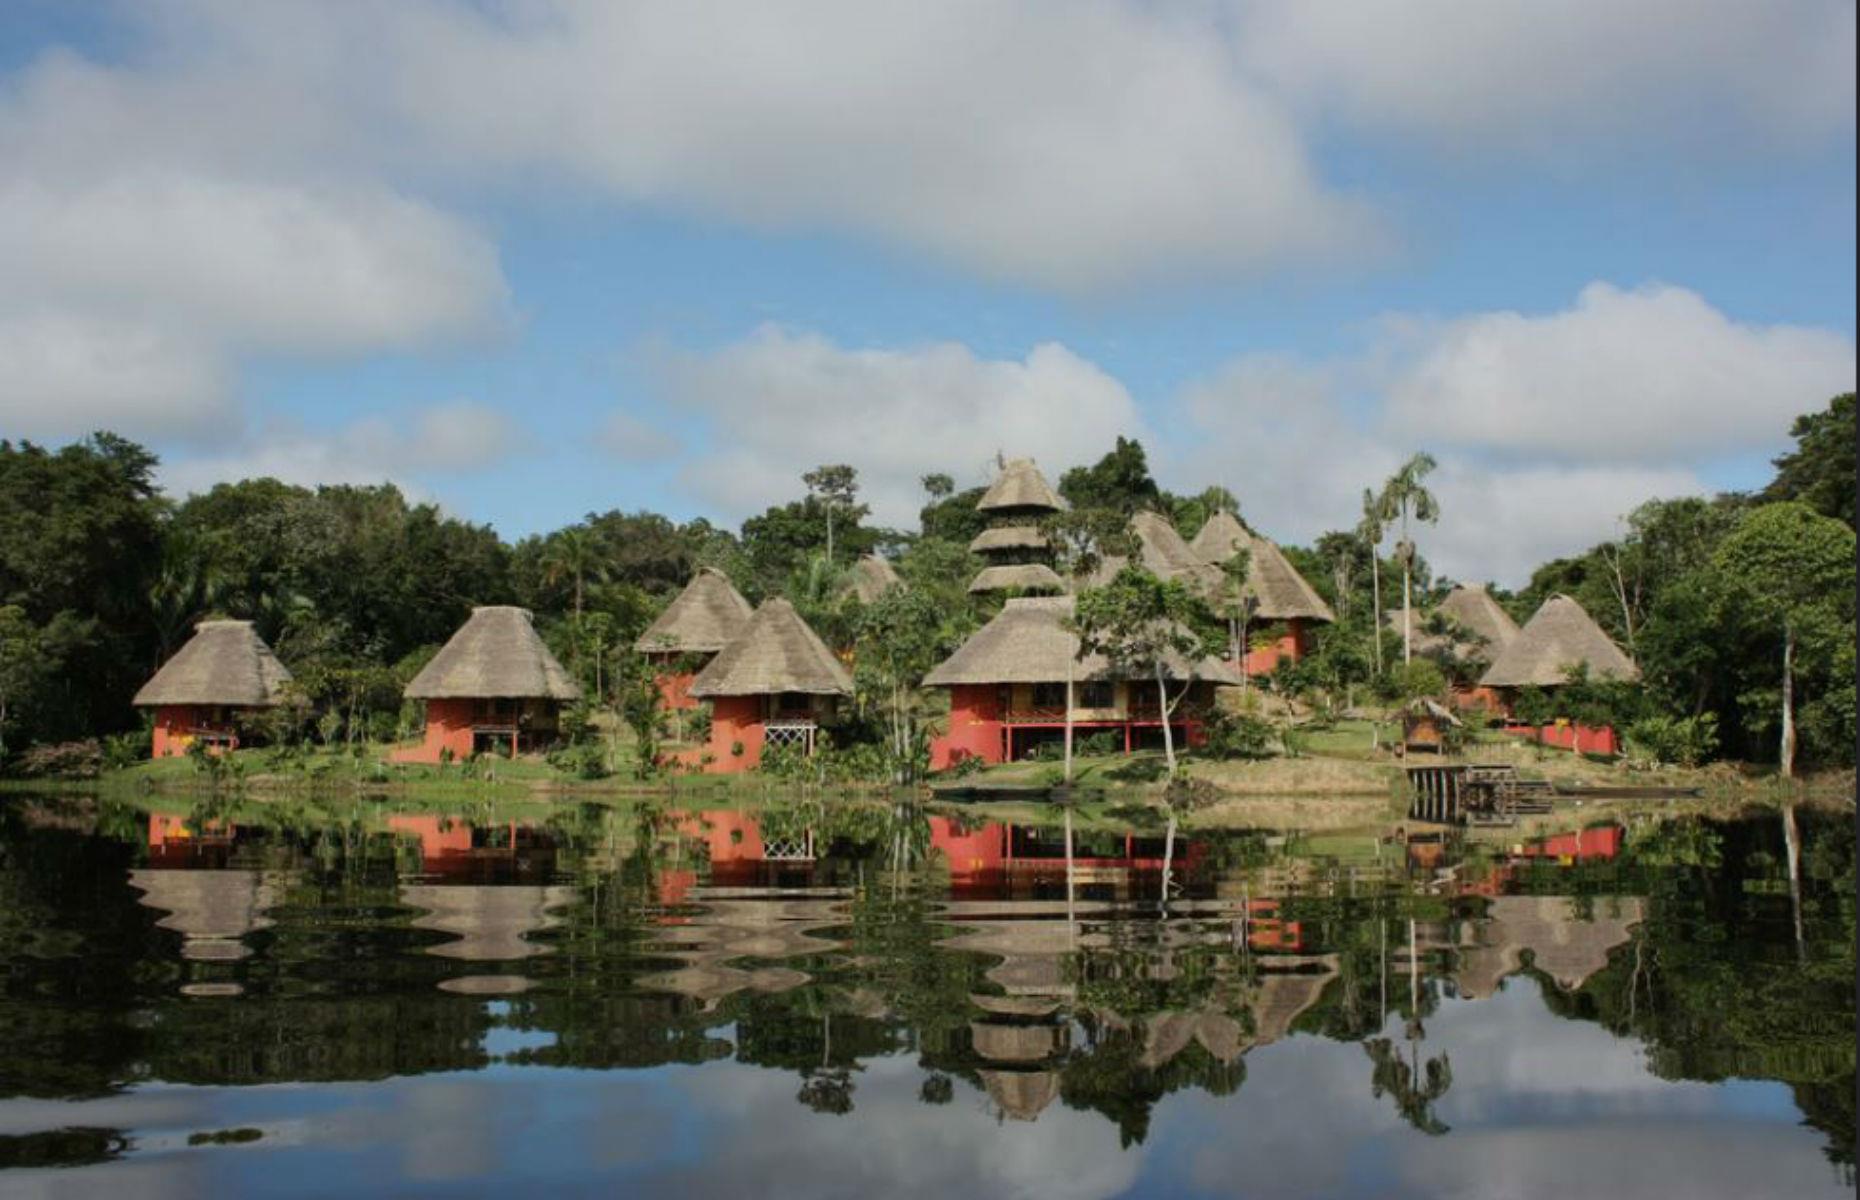 Napo Wildlife Center, Amazon Rainforest, Ecuador 